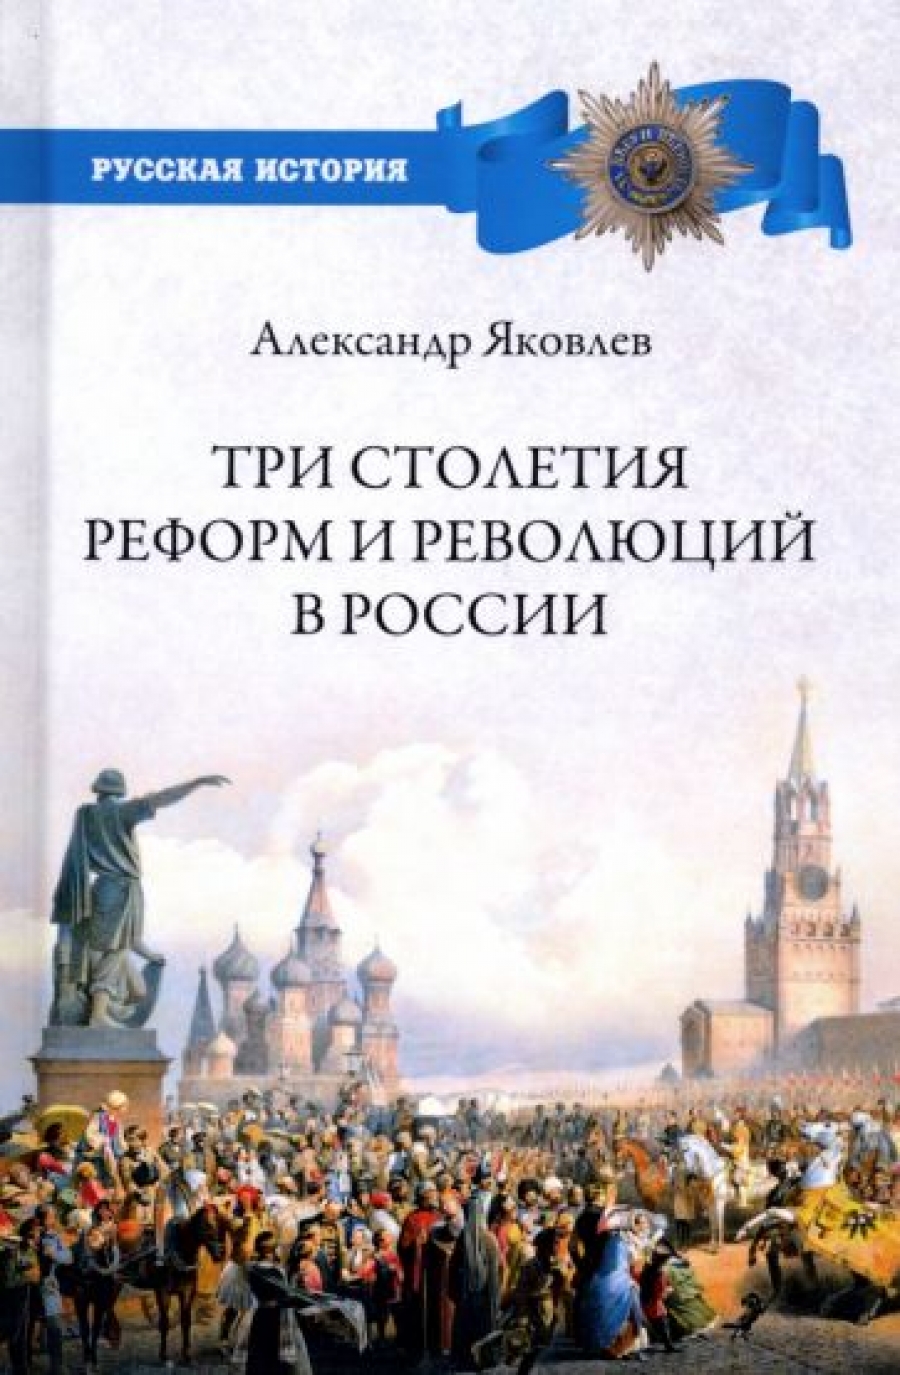 Яковлев А.И. Три столетия реформ и революций в России 